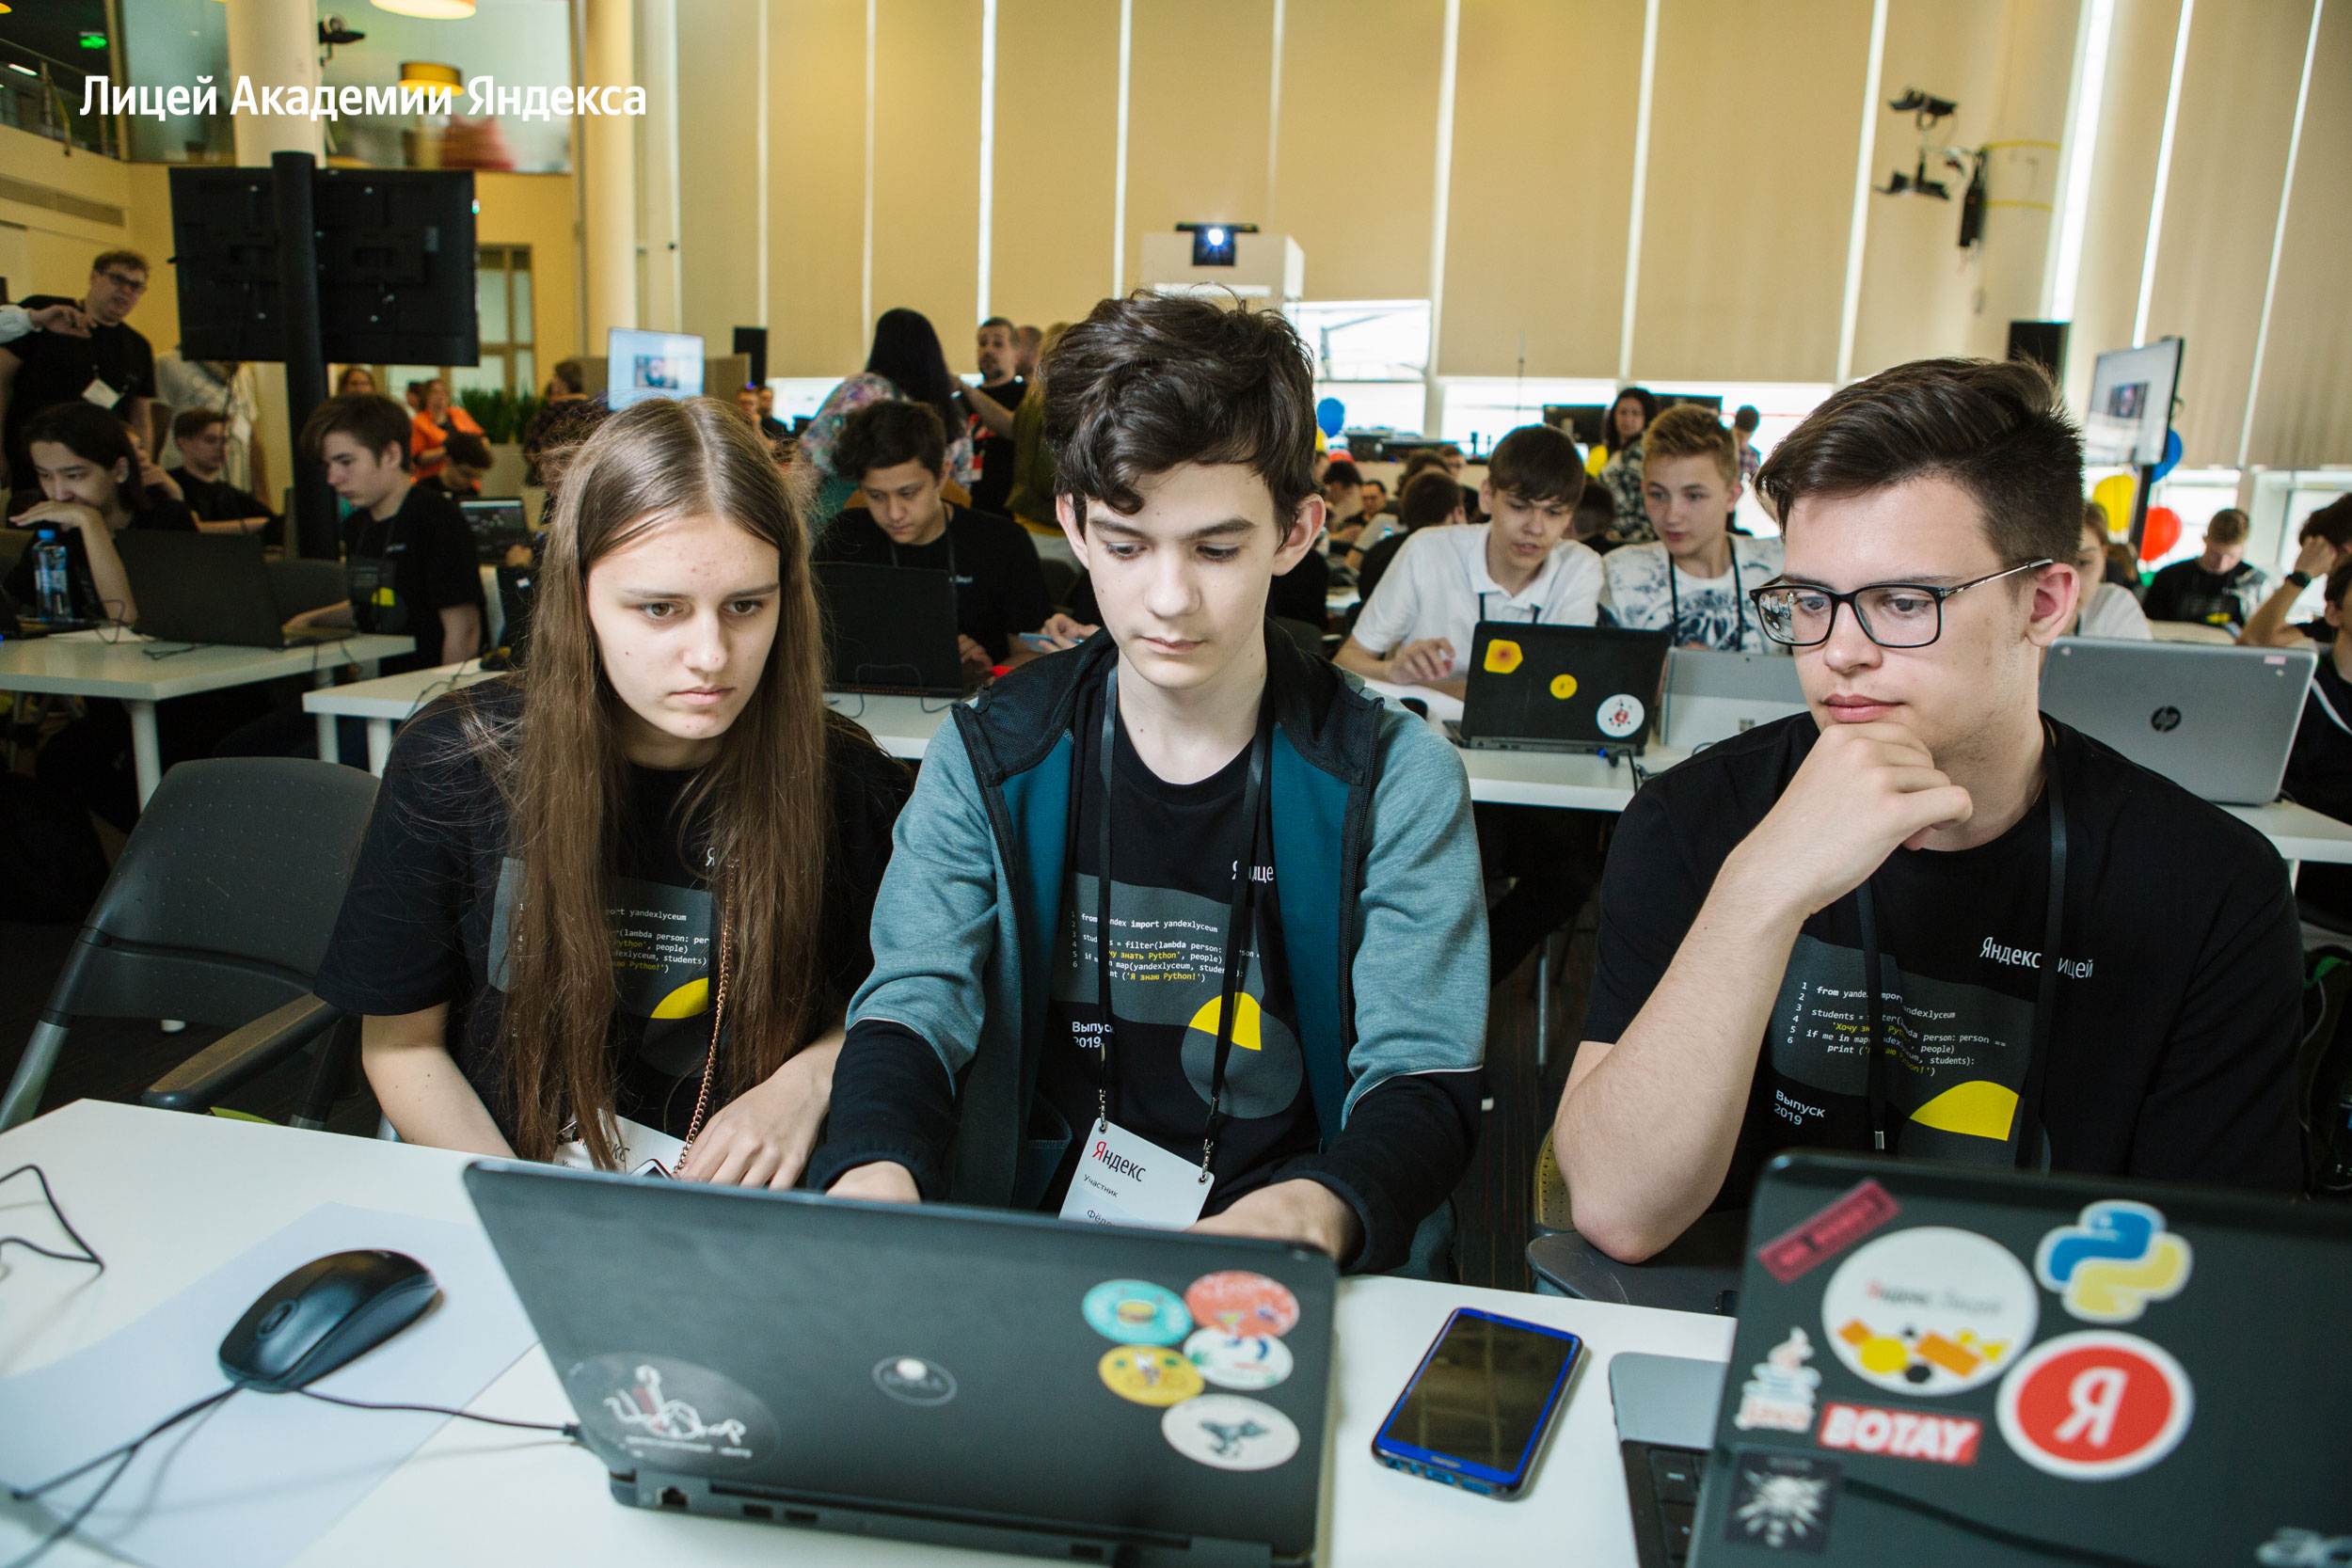 Лицей Академии Яндекса открывает набор на новый учебный год